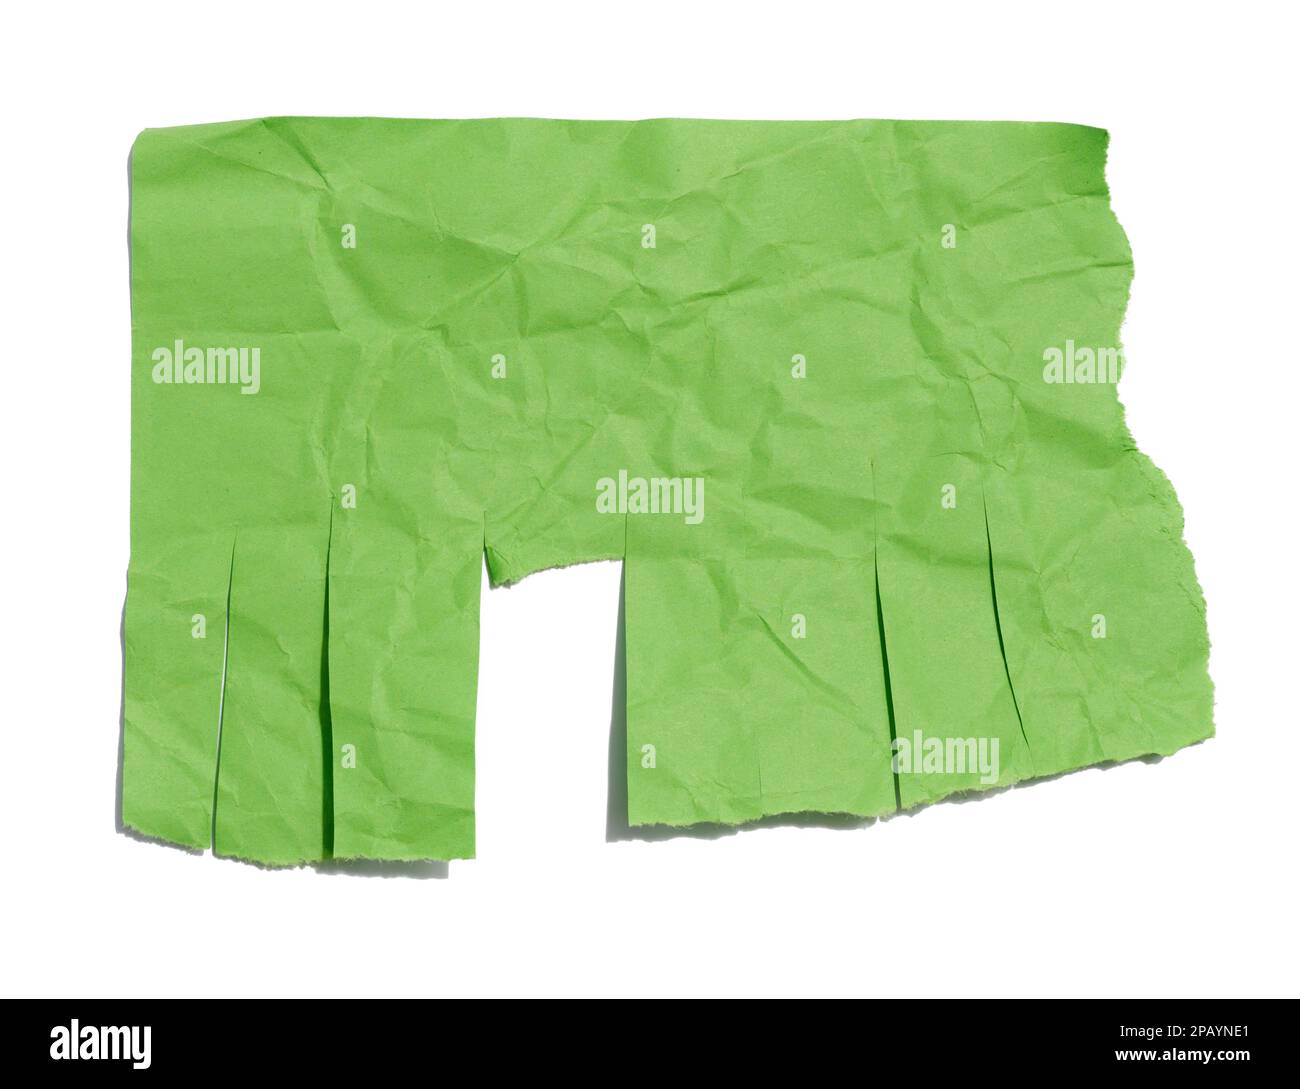 Feuille de papier verte avec bords déchirés pour écrire une annonce sur un fond blanc isolé Banque D'Images